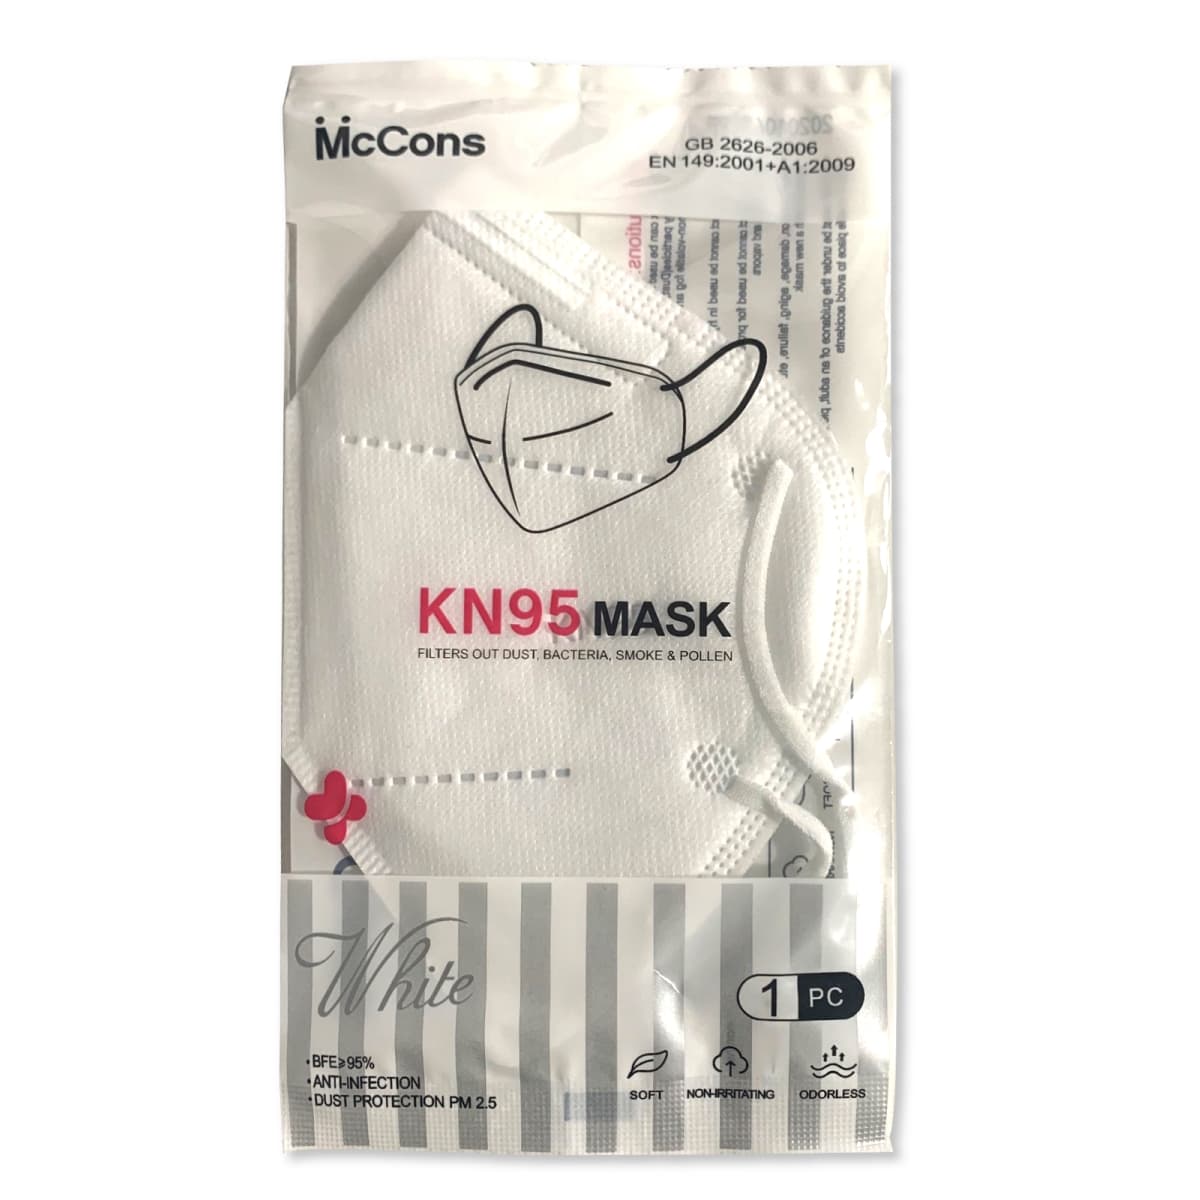 KN95 / FFP2 Masque de protection respiratoire, sachet individuel